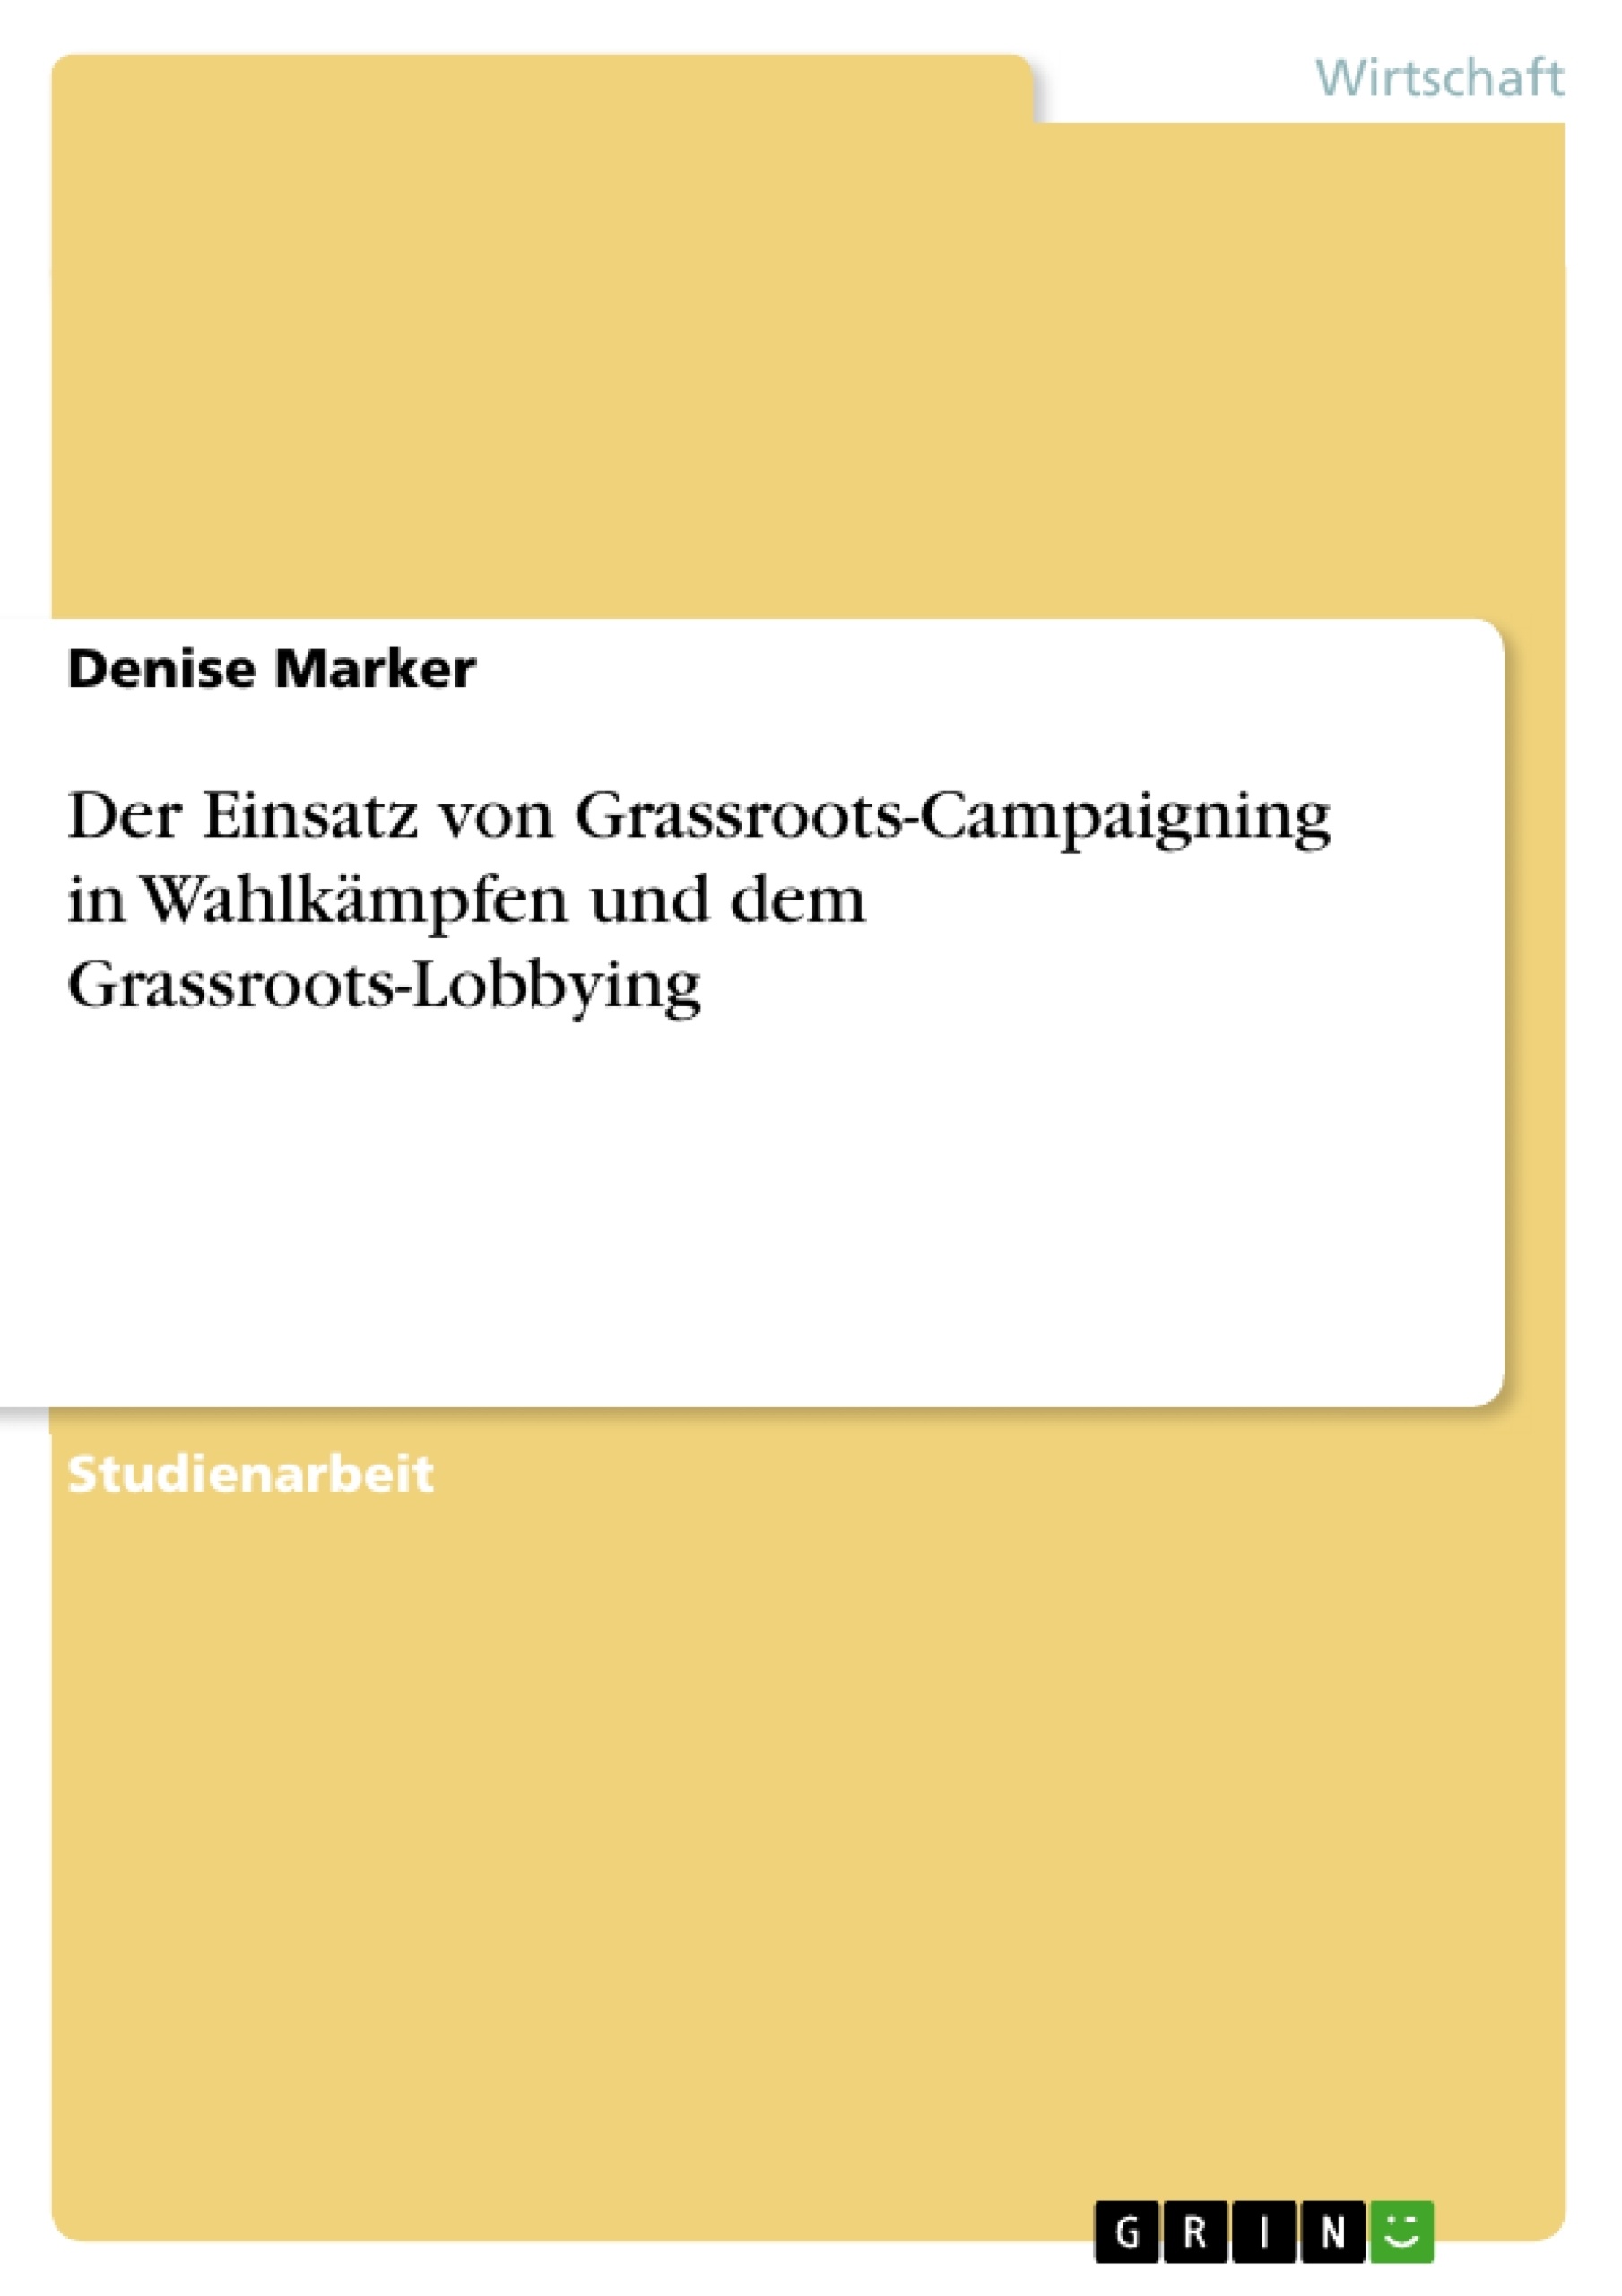 Titel: Der Einsatz von Grassroots-Campaigning in Wahlkämpfen und dem Grassroots-Lobbying